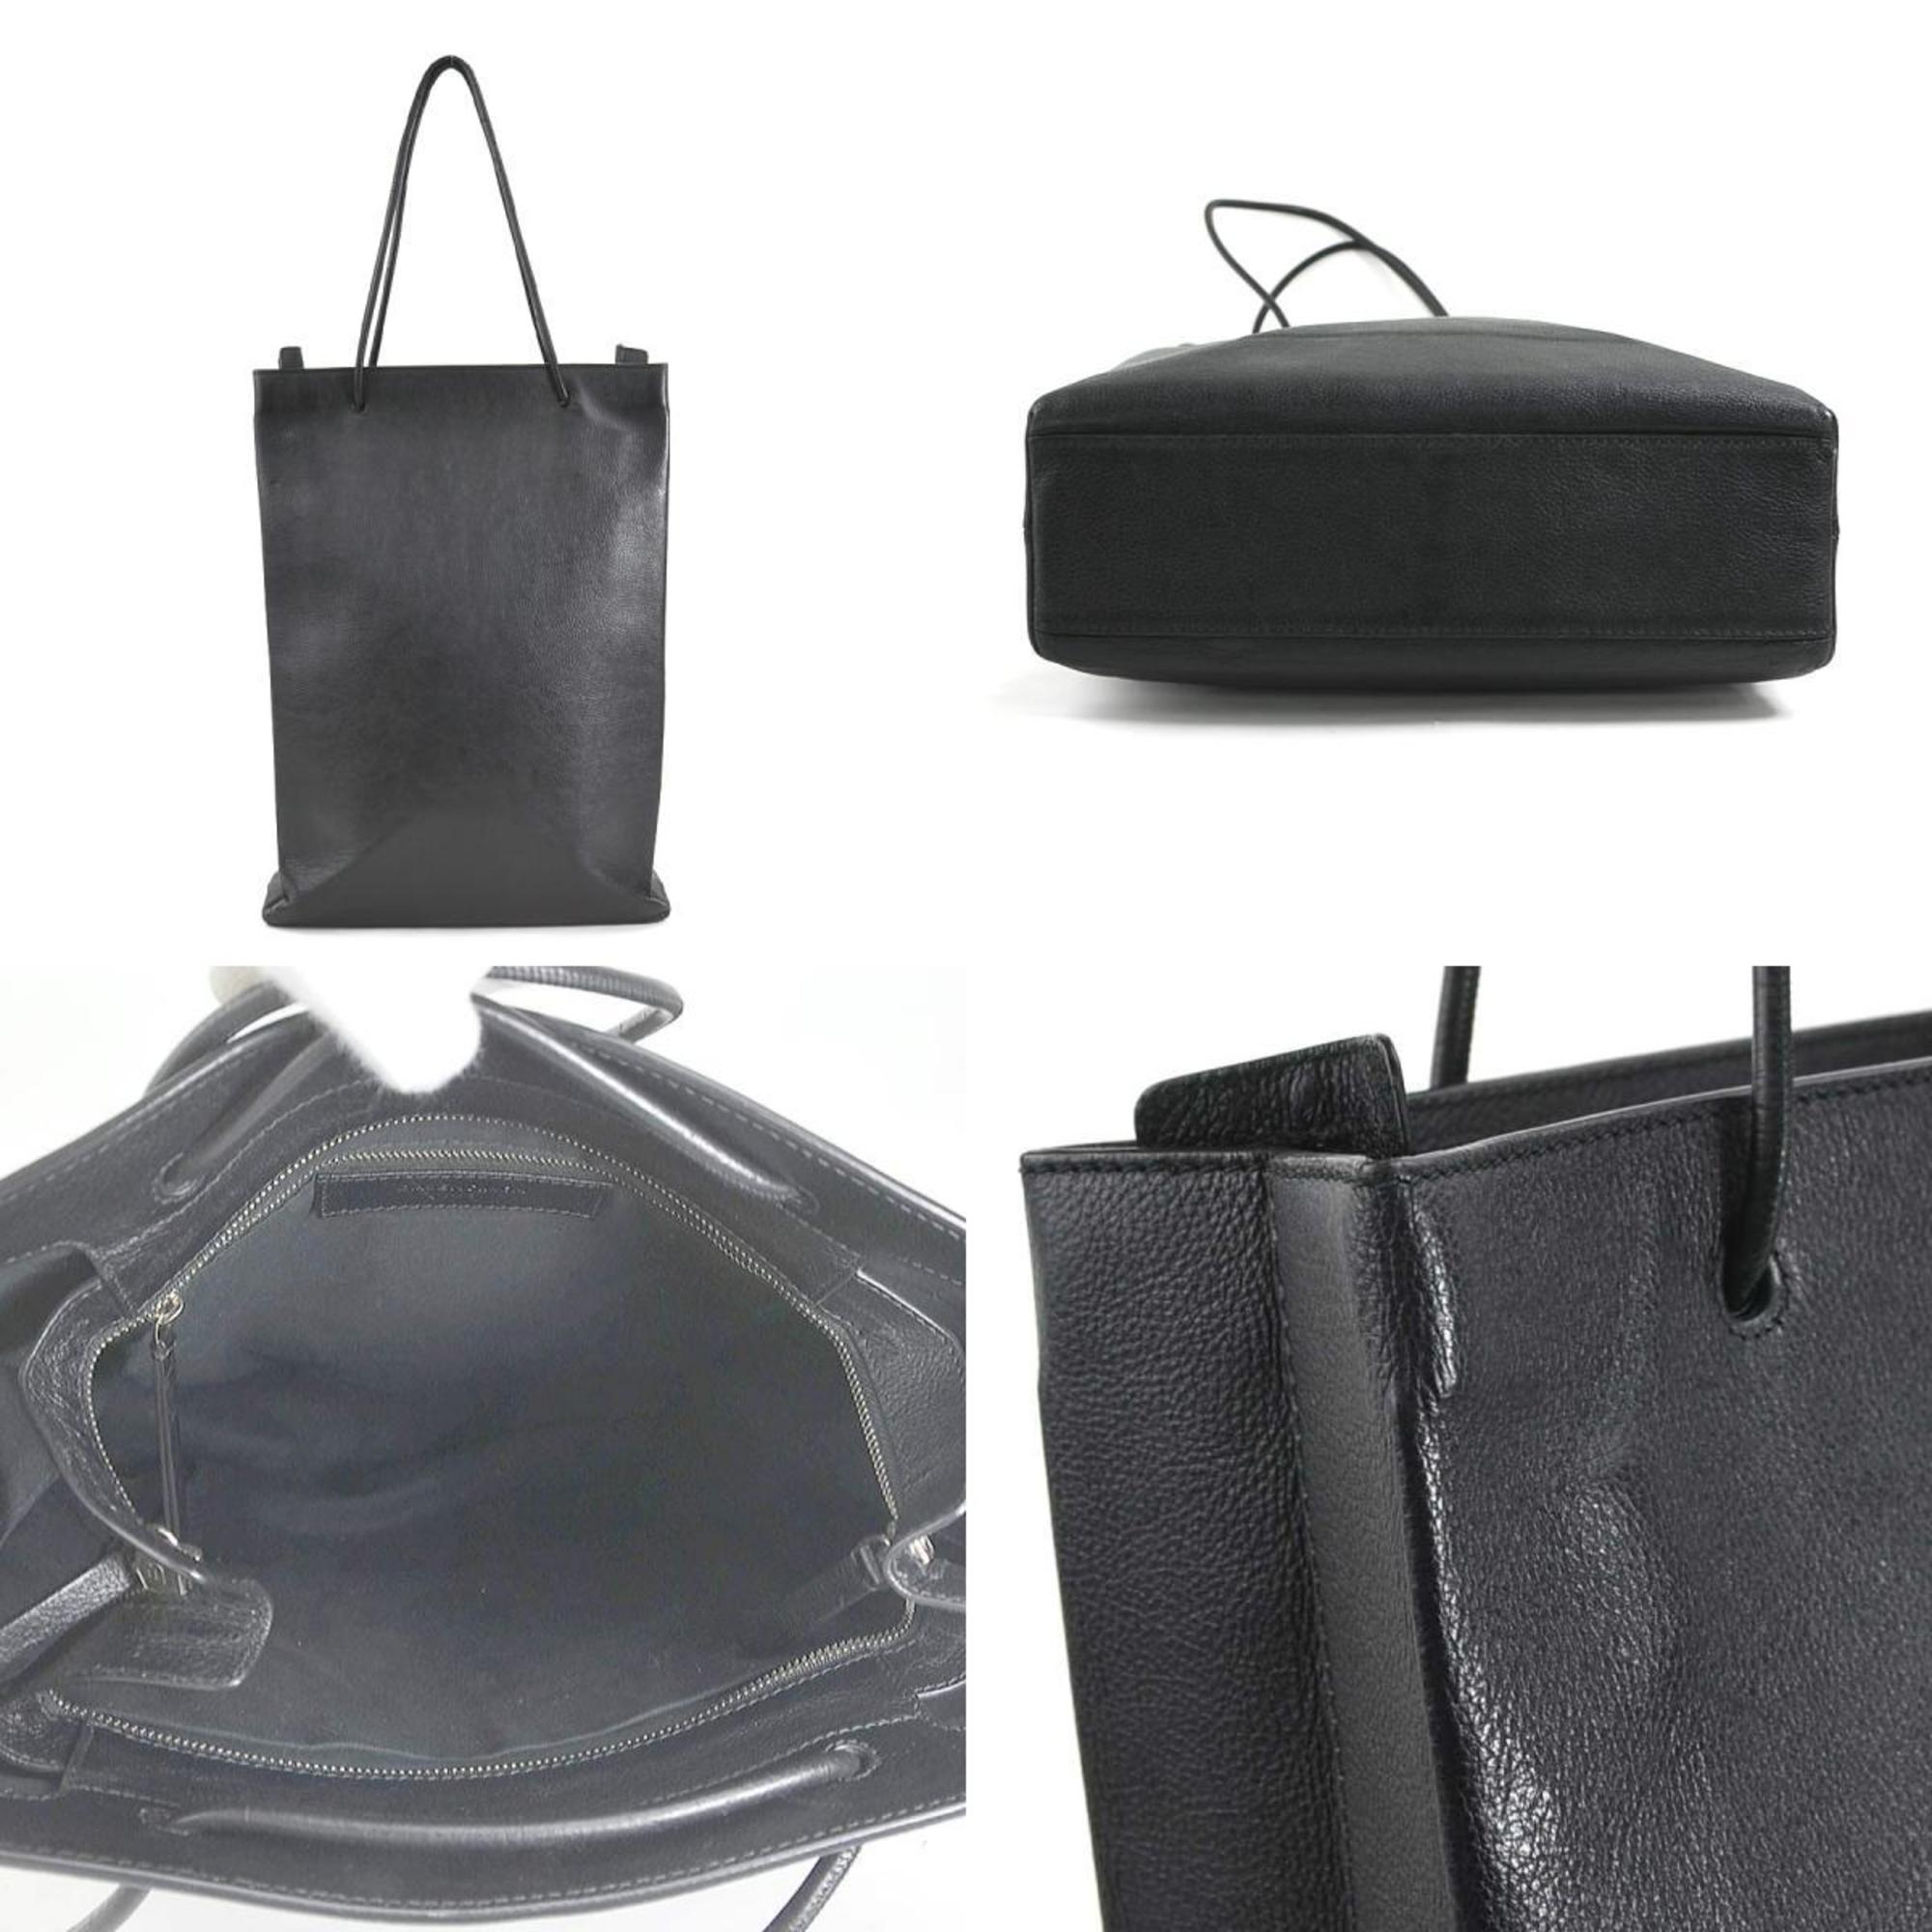 BALENCIAGA Shoulder Bag North South M Leather Black Unisex 482545 r9966a